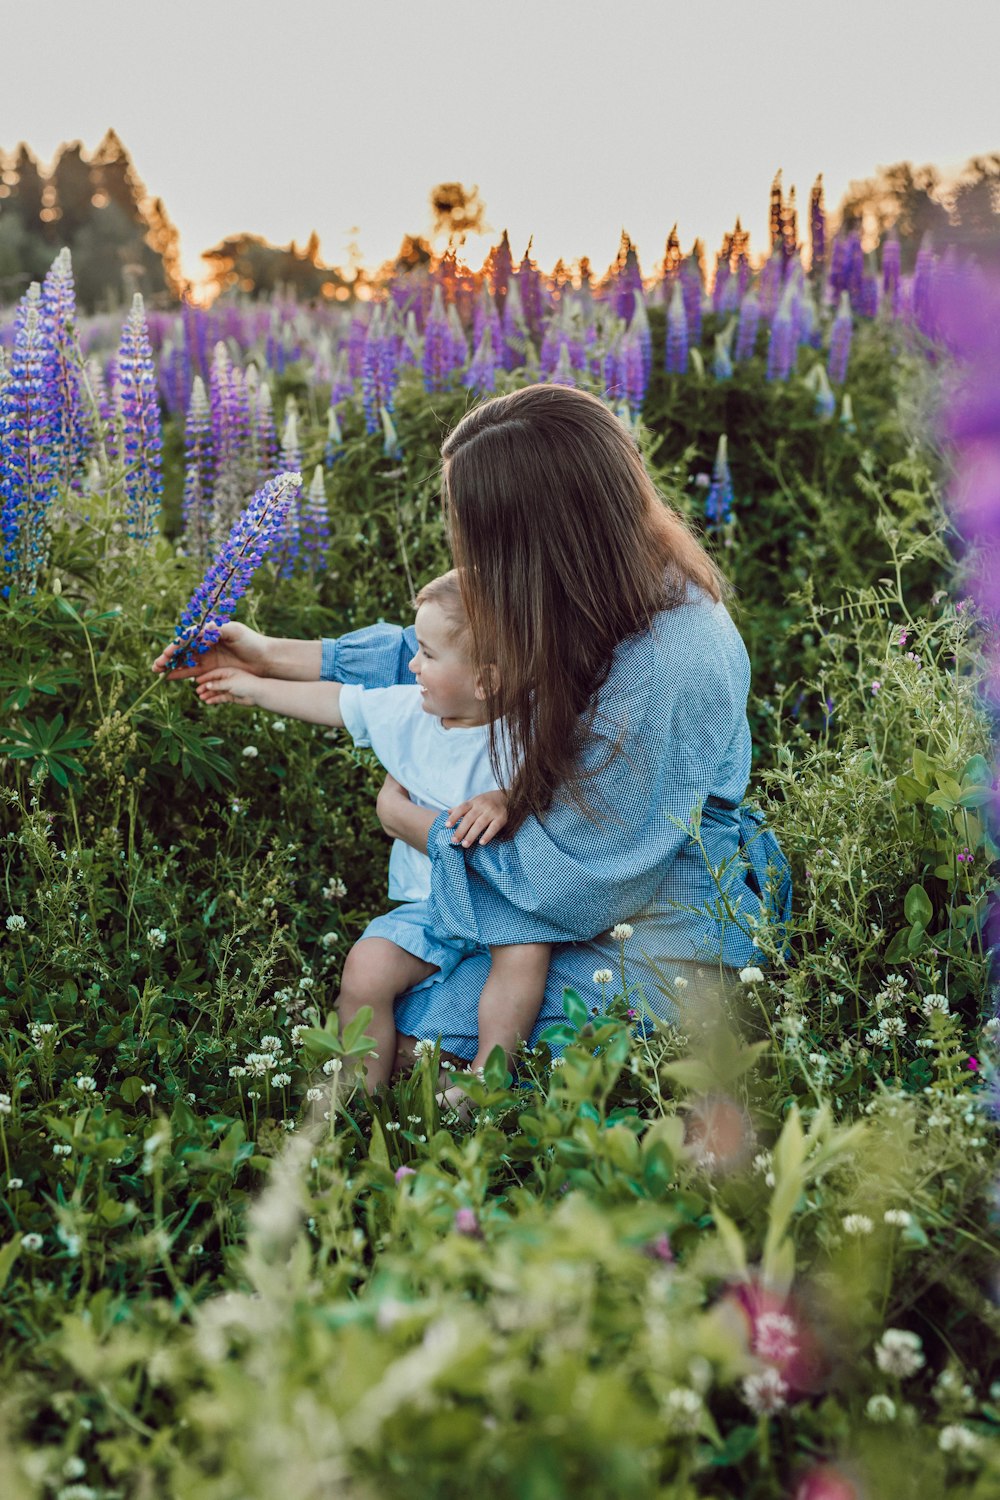 보라색 꽃으로 둘러싸인 무릎에 아기와 함께 앉아 있는 여자